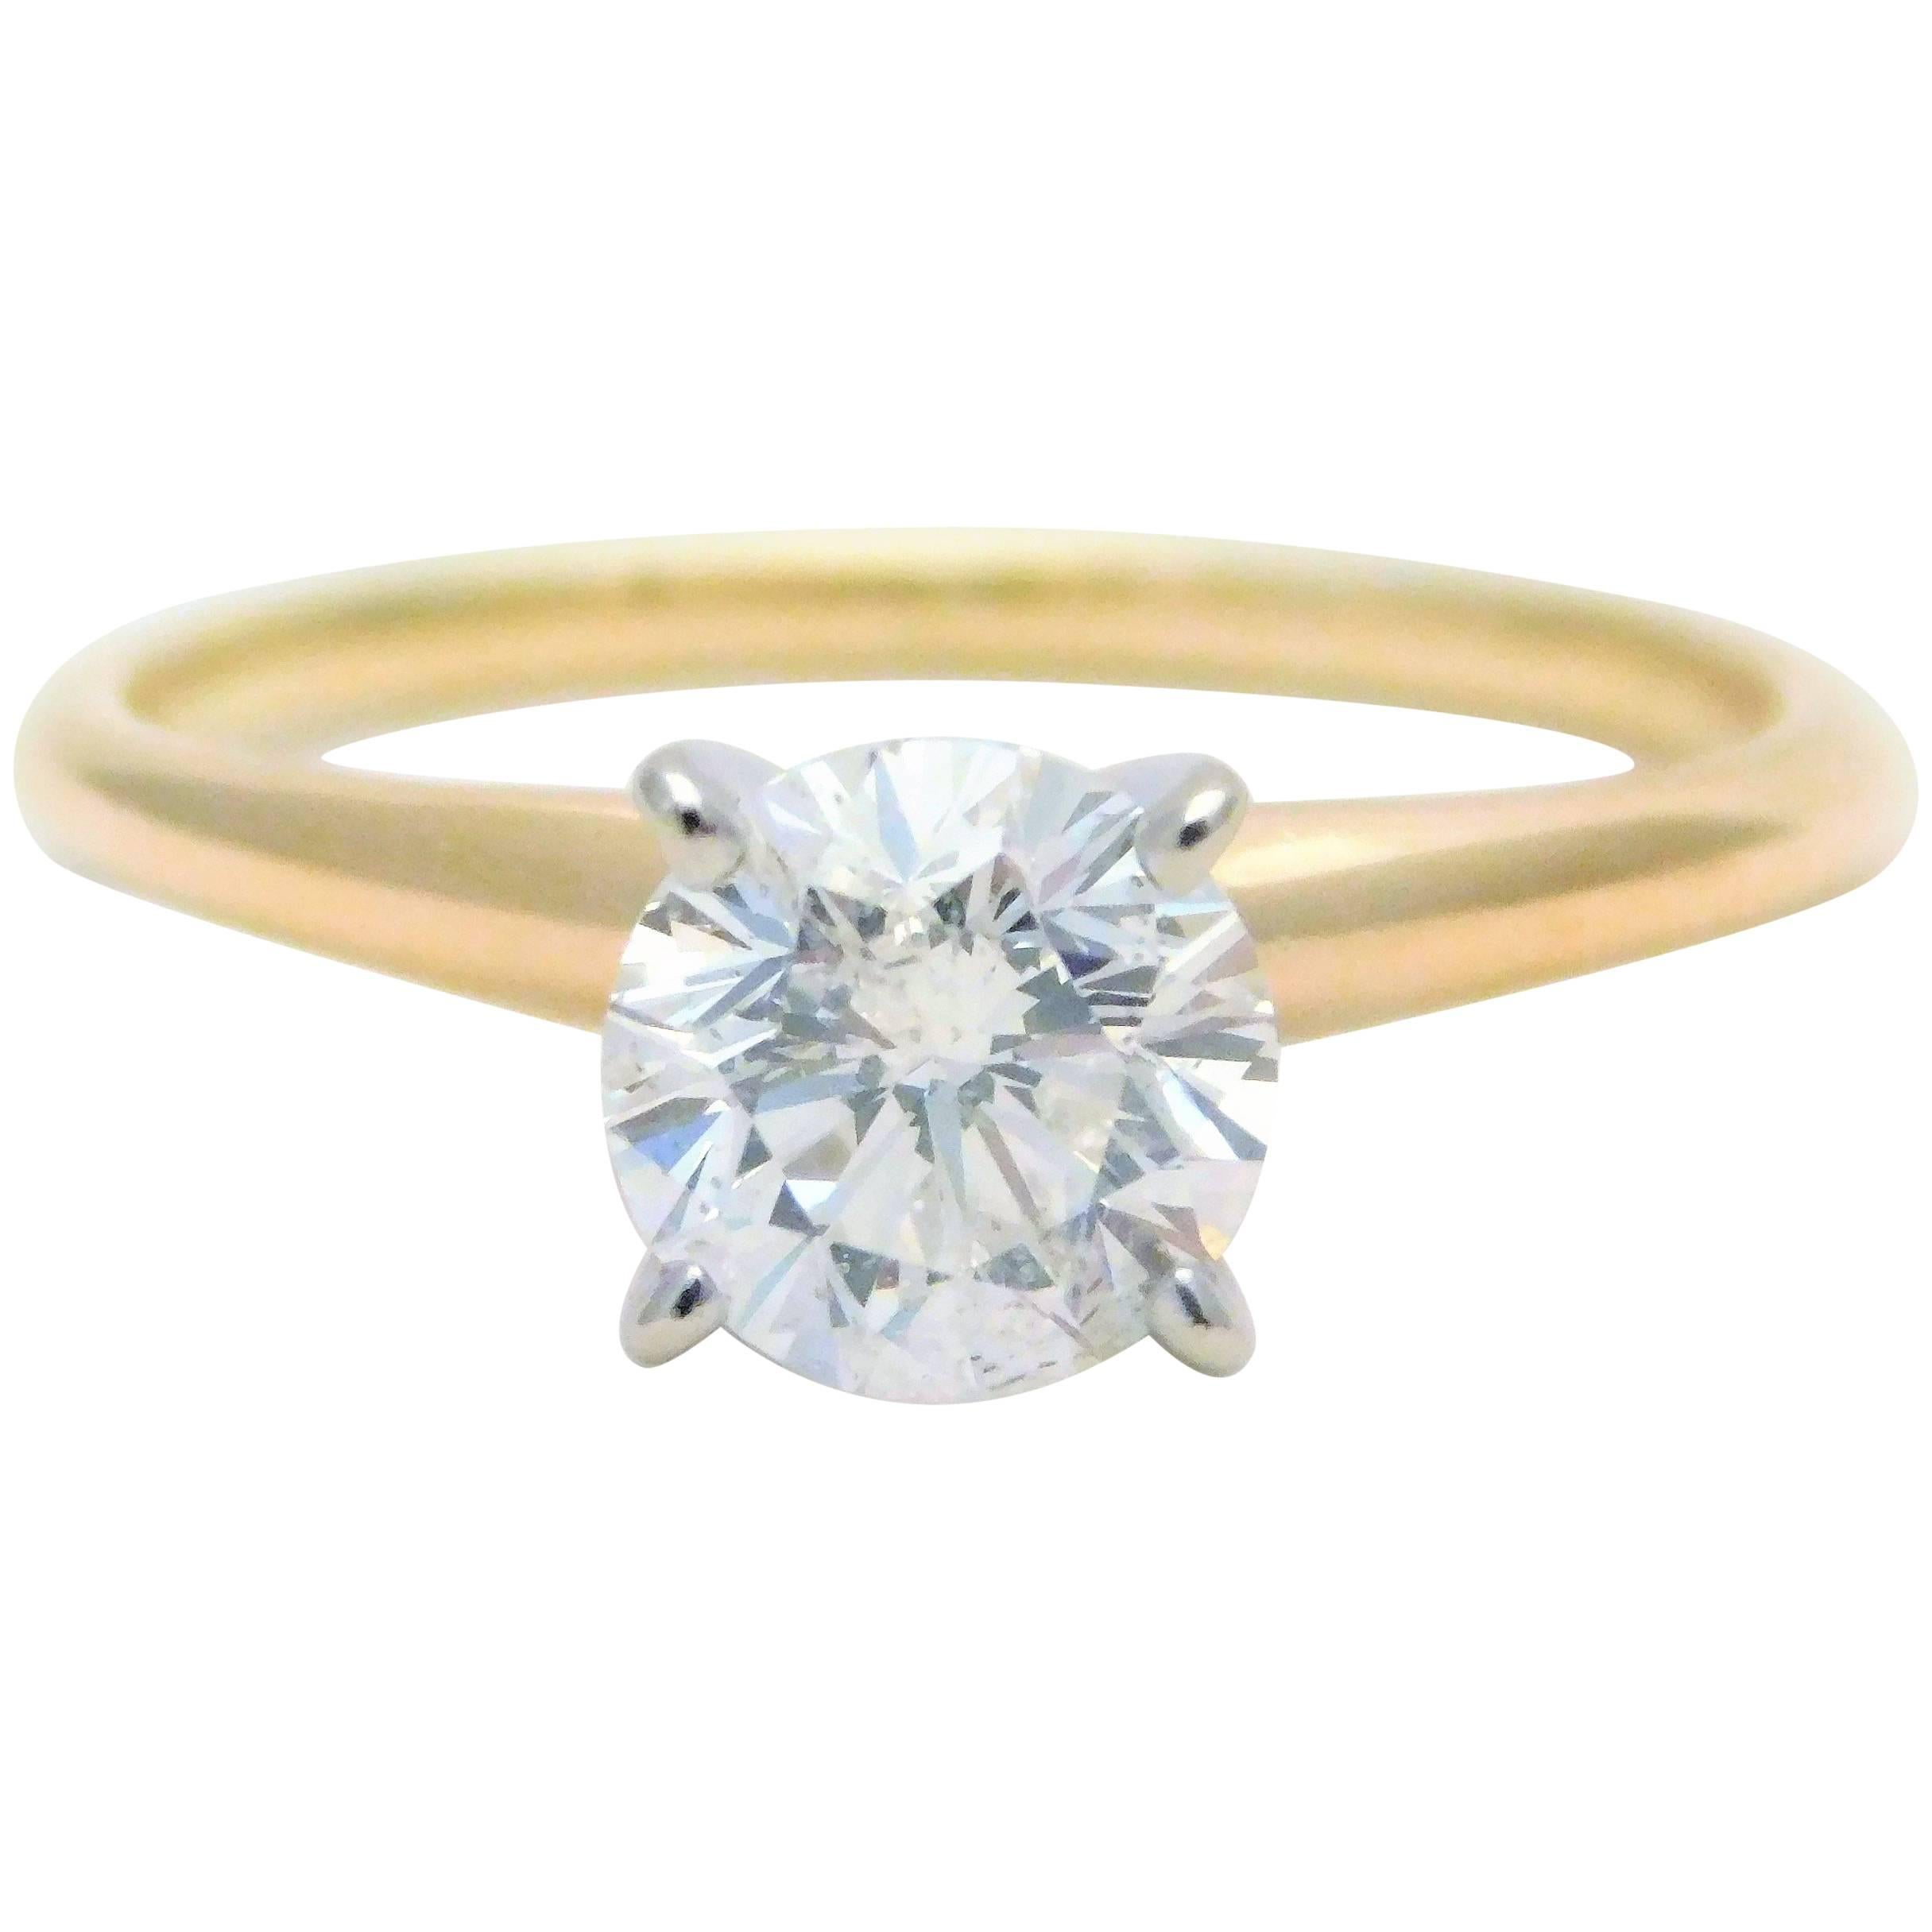 1.23 Carat Round Brilliant-Cut Diamond Solitaire Engagement Ring